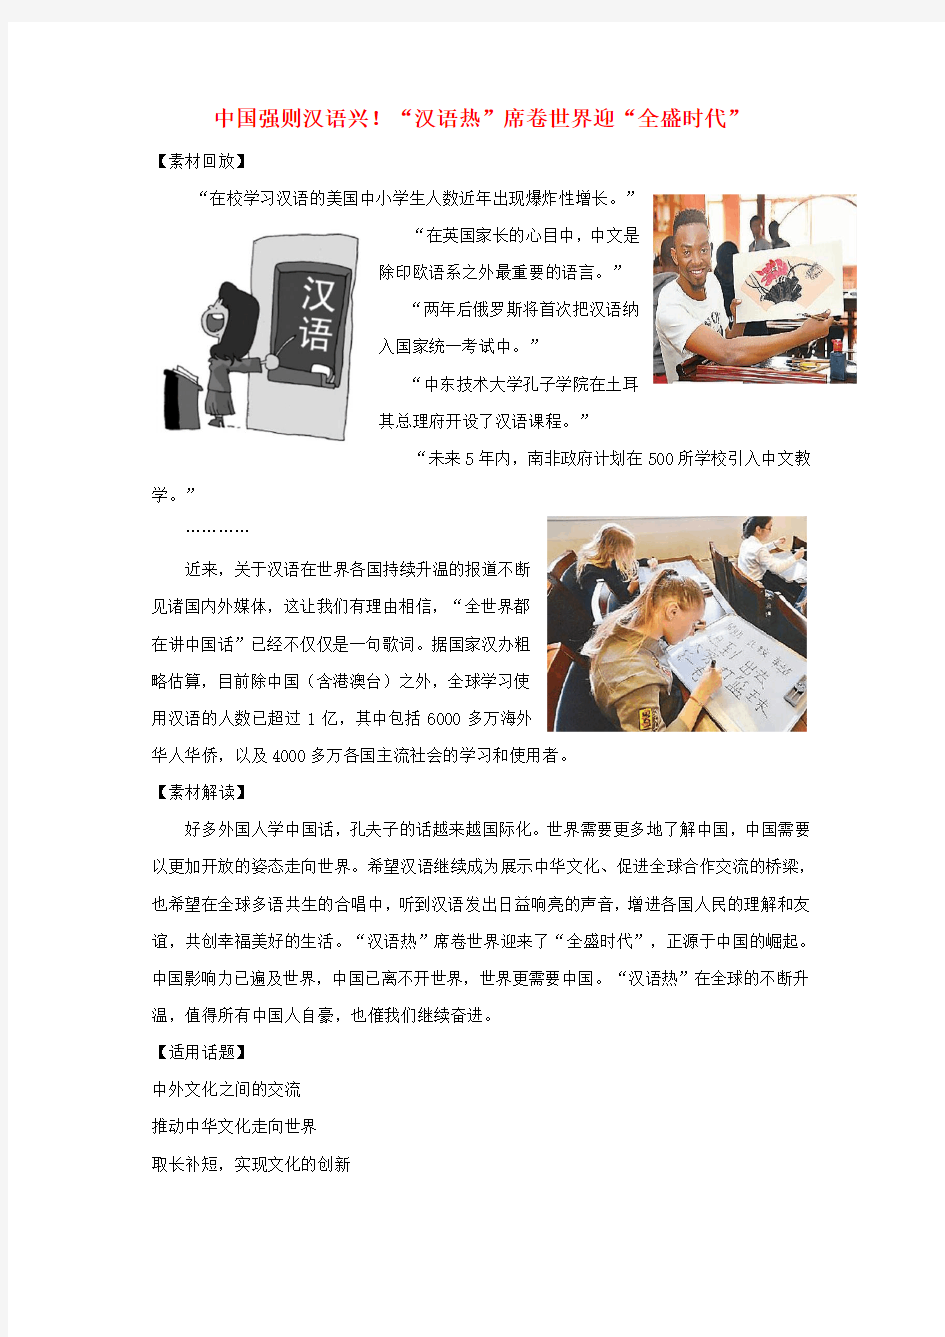 2018高考语文 作文备考热点素材 中国强则汉语兴!“汉语热”席卷世界迎“全盛时代”